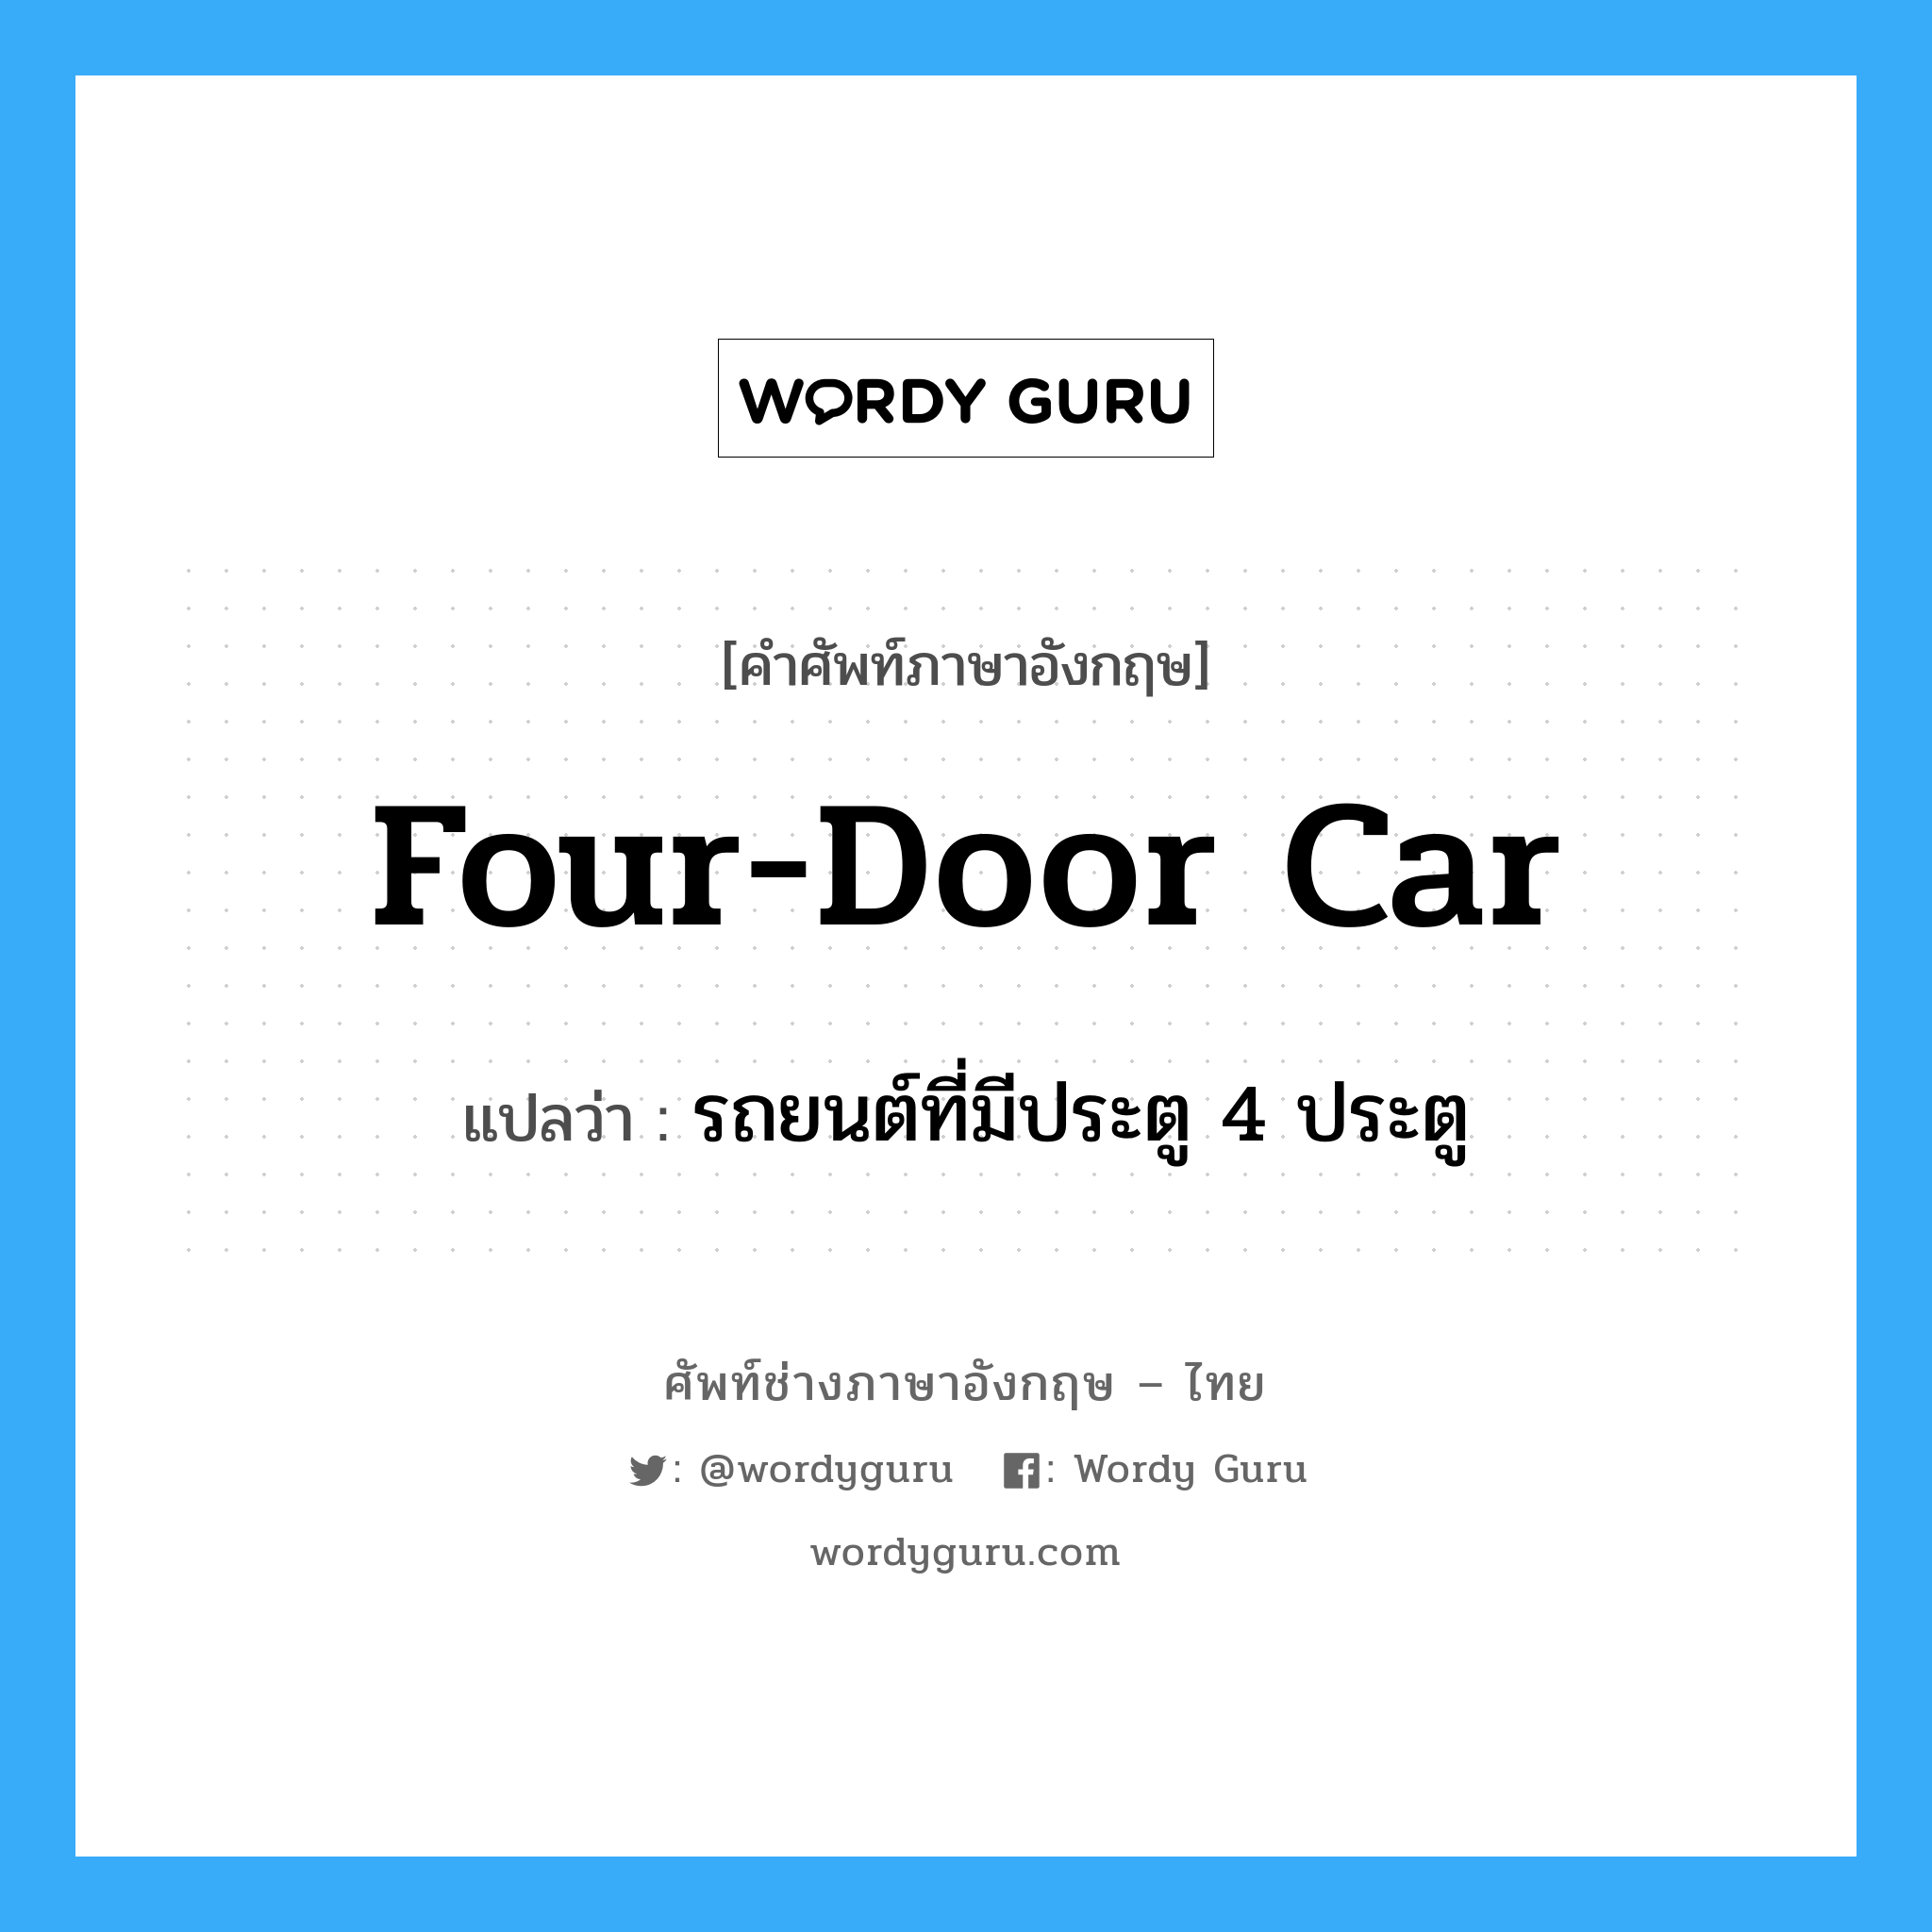 รถยนต์ที่มีประตู 4 ประตู ภาษาอังกฤษ?, คำศัพท์ช่างภาษาอังกฤษ - ไทย รถยนต์ที่มีประตู 4 ประตู คำศัพท์ภาษาอังกฤษ รถยนต์ที่มีประตู 4 ประตู แปลว่า four-door car